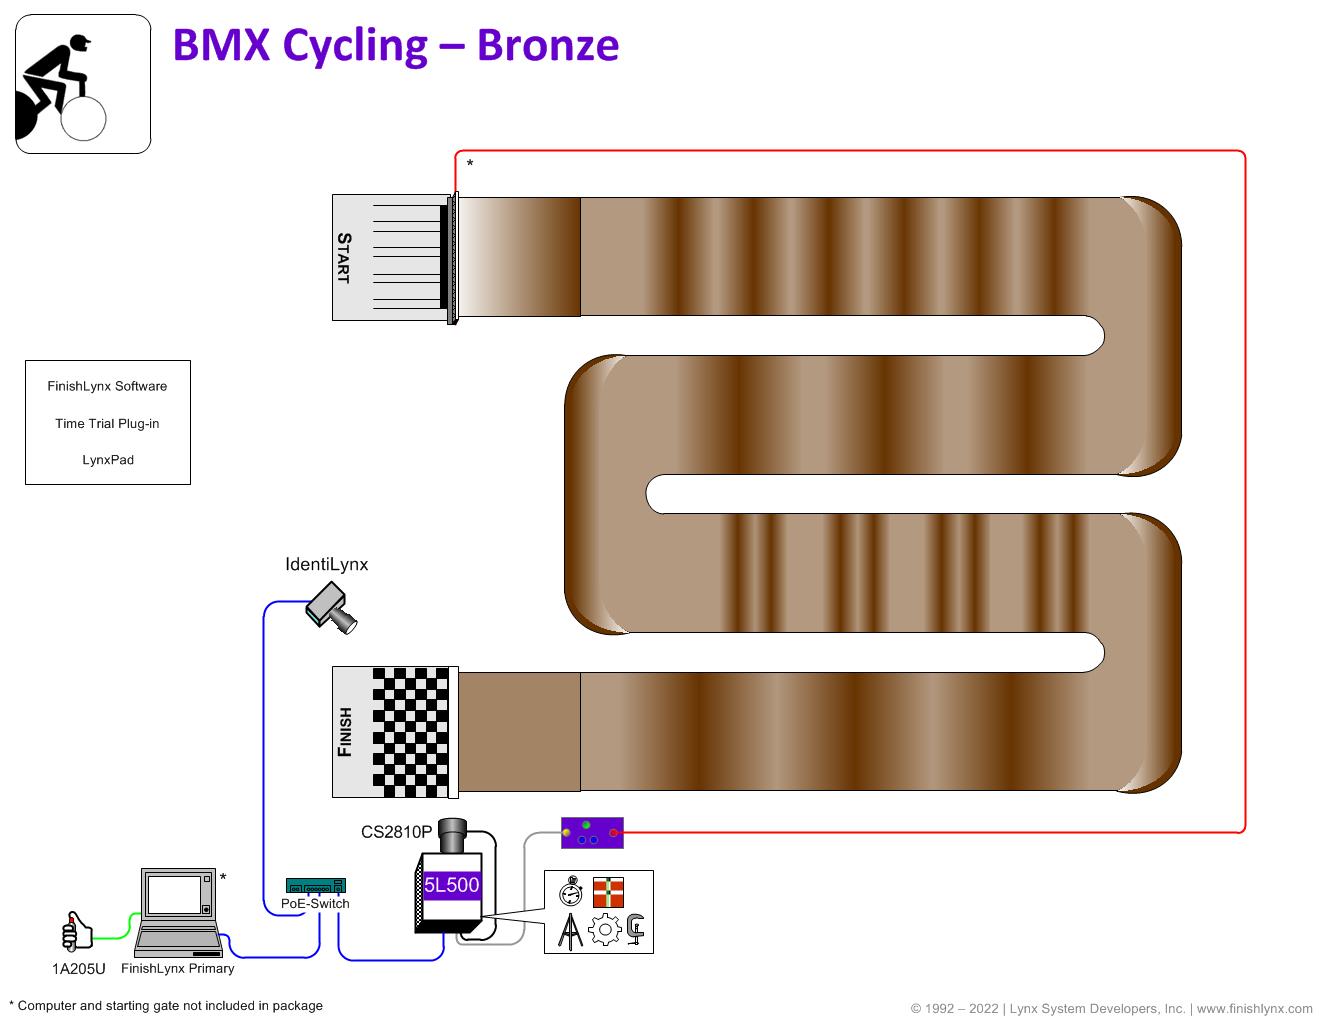 BMX Bronze Package